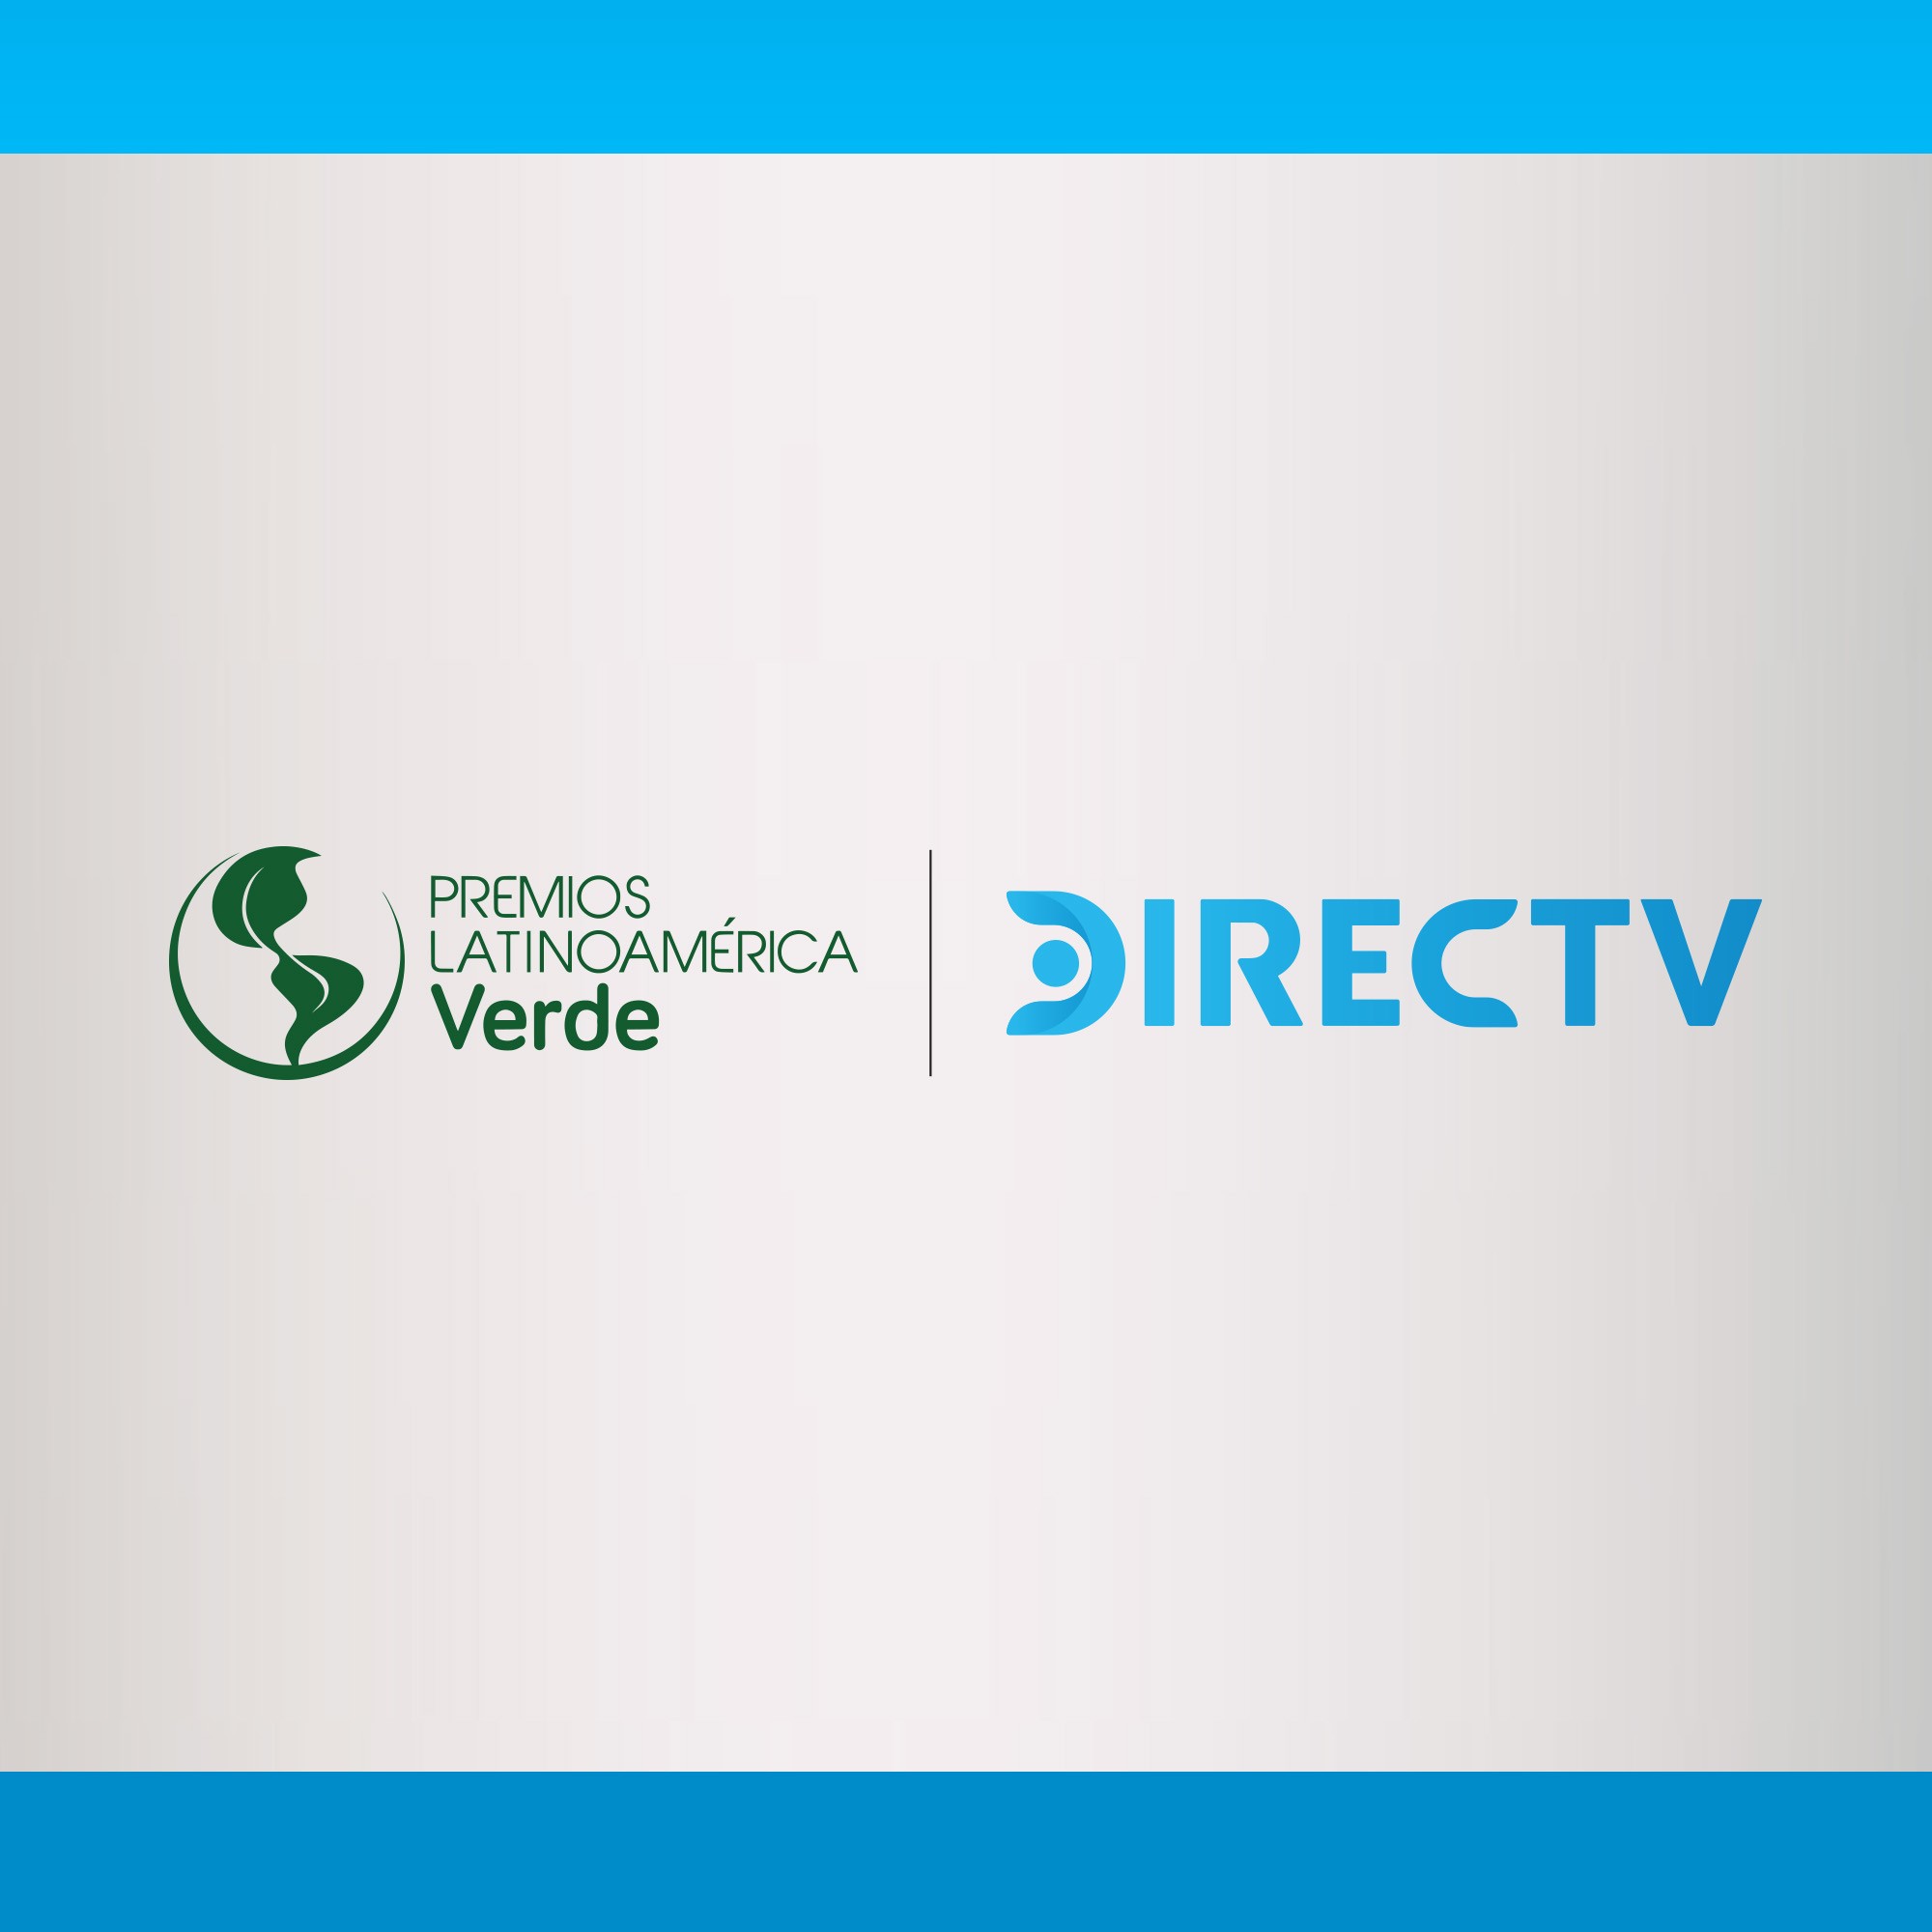 Directv y Premios Latinoamérica Verde vitrinas para premios sostenibles